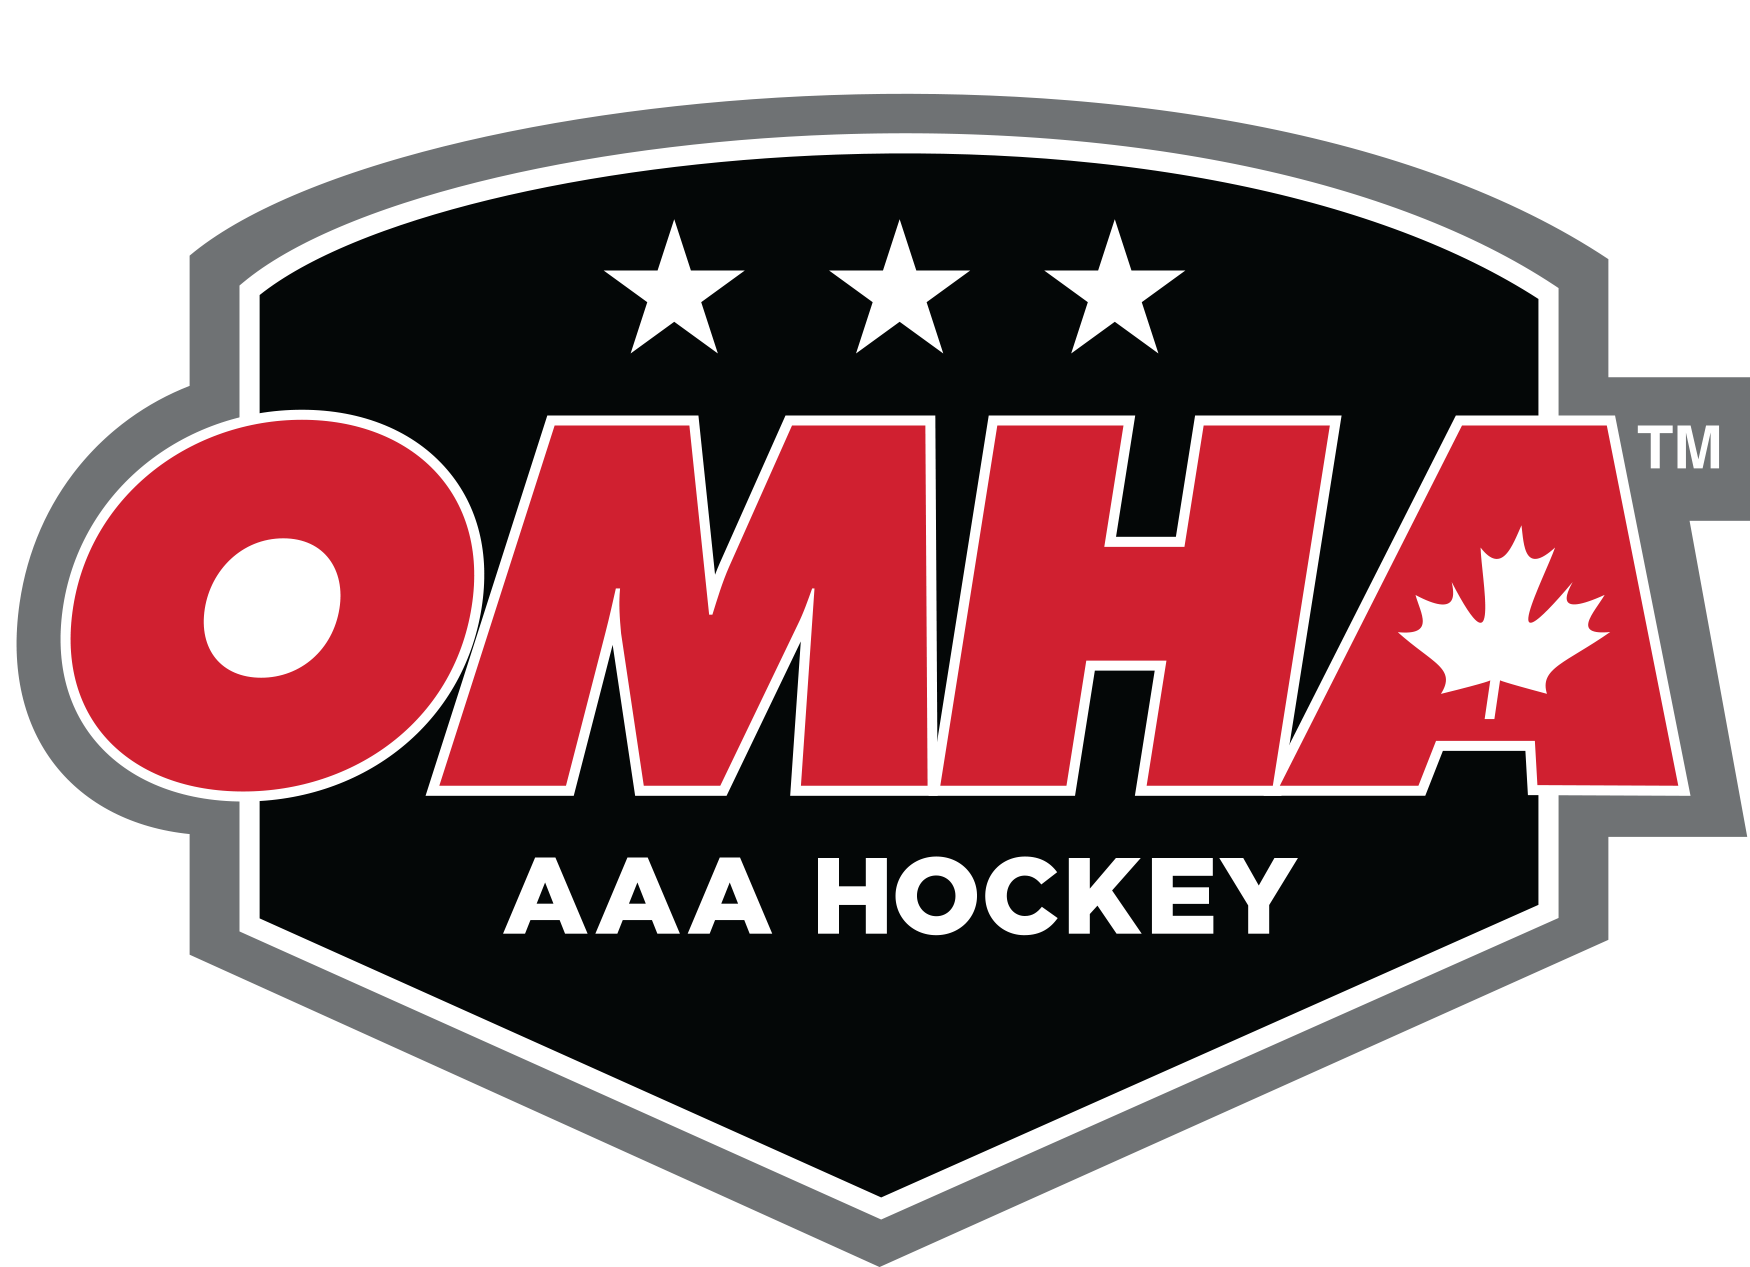 OMHA East AAA Hockey League